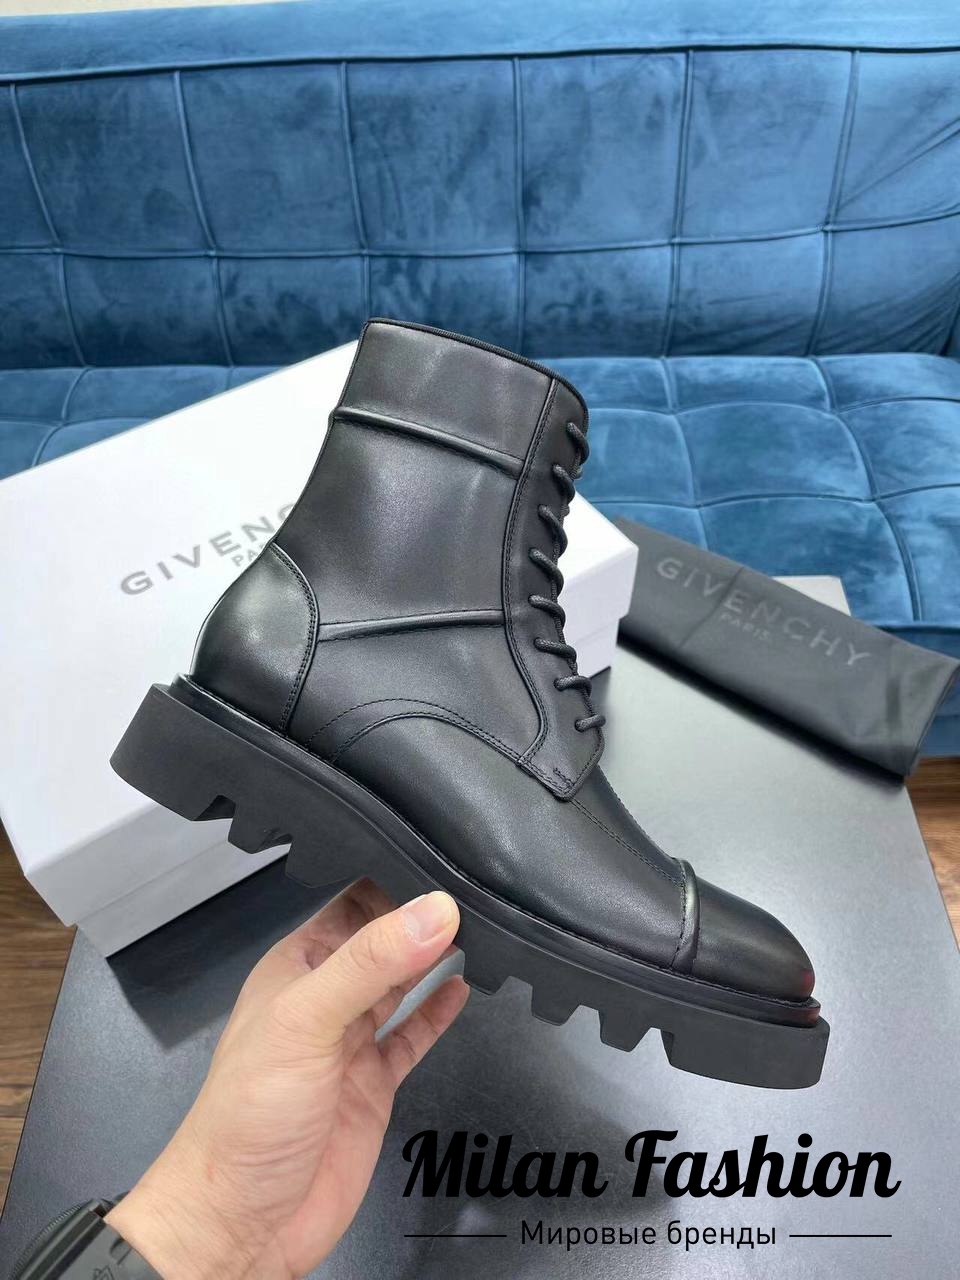 Ботинки Givenchy №V143252 купить в Москве - цены в интернет-магазинеМир-Милана.ру